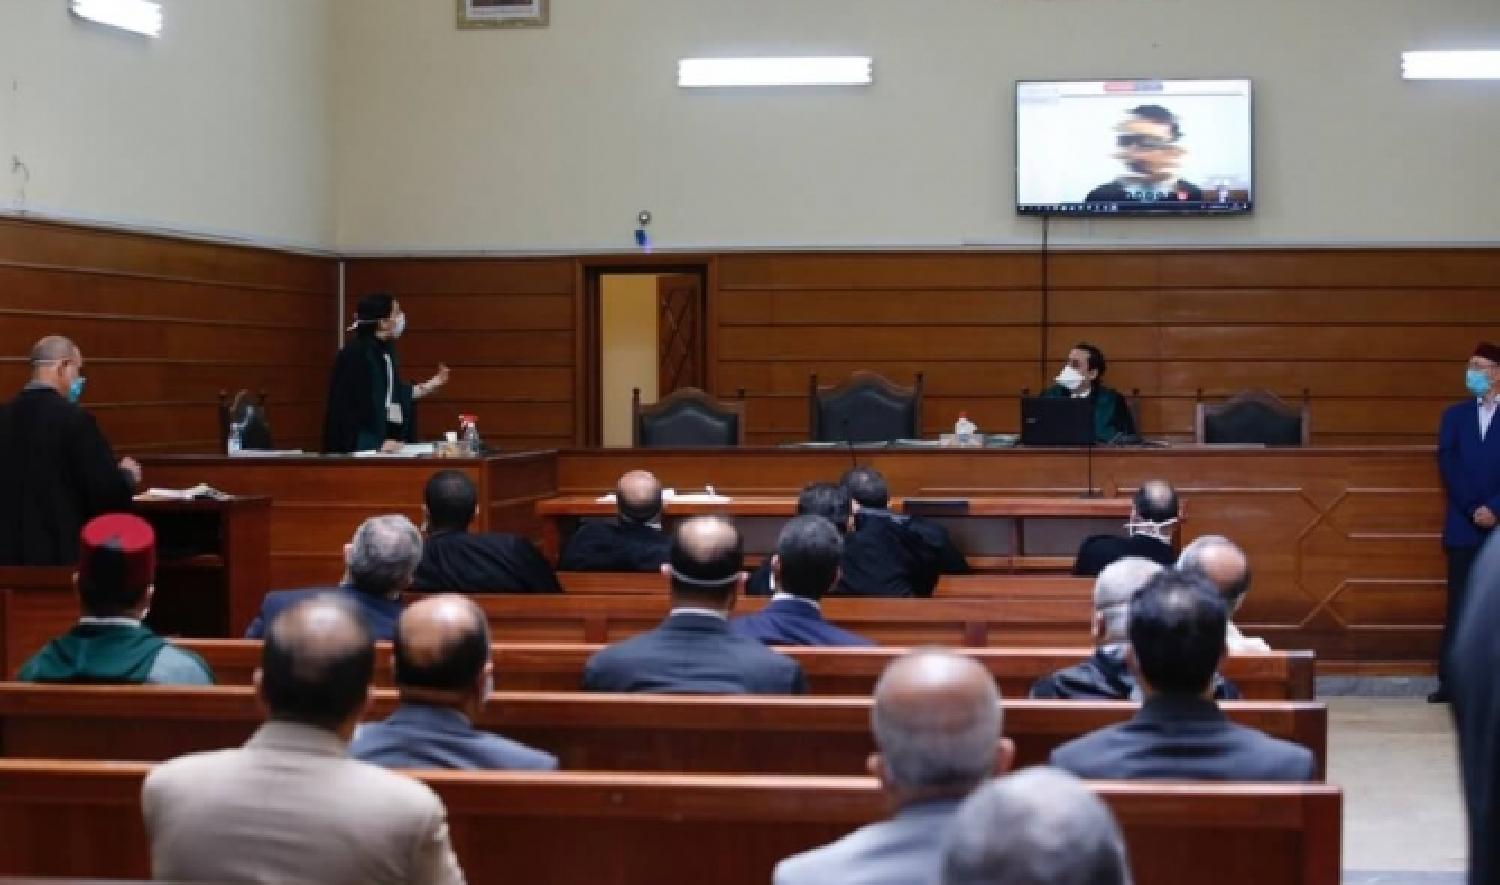 عقد أزيد من 400 جلسة عن بعد بمحاكم المغرب خلال الأسبوع الأخير